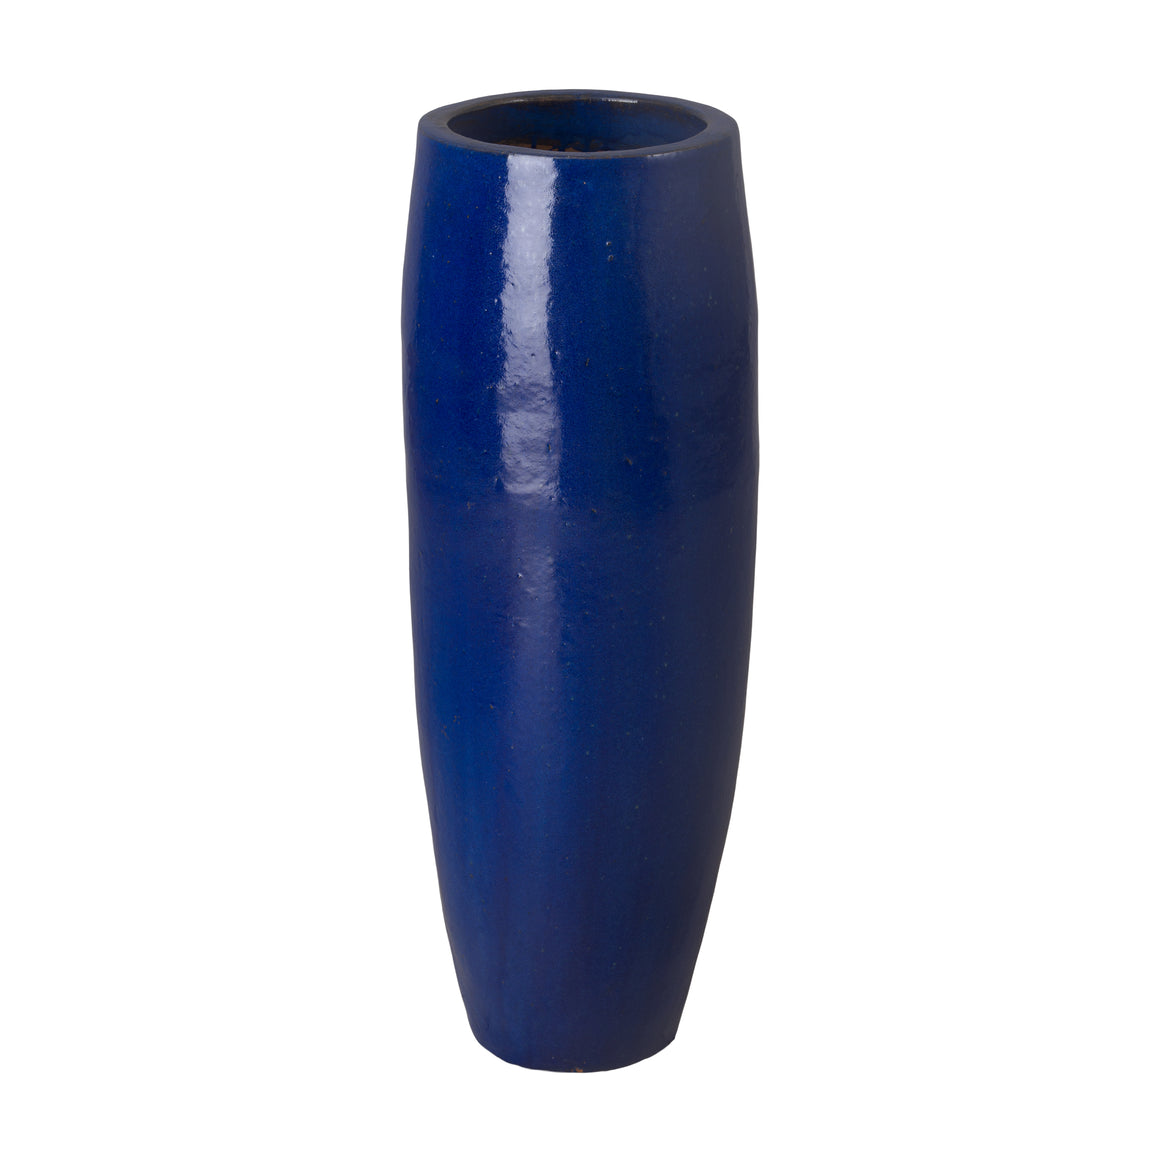 Medium Tall Blue Ceramic Cylinder Planter